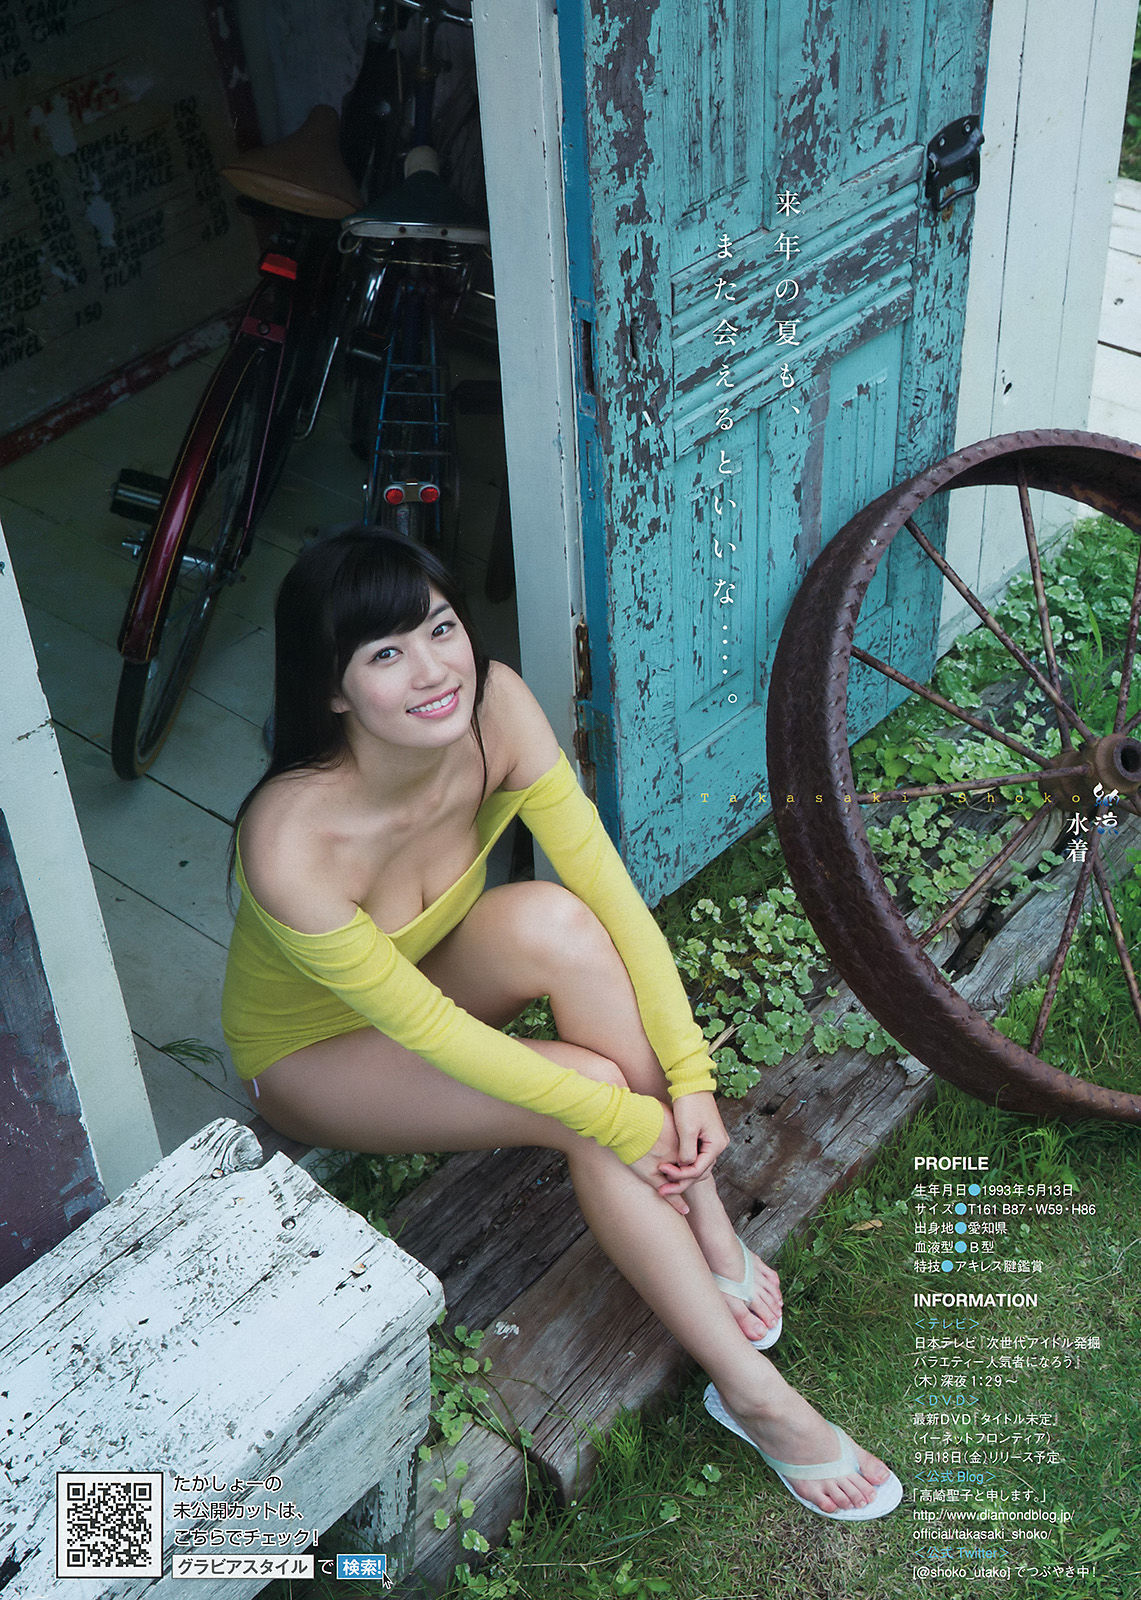 [Young Magazine] Ishihara さとみ Takasaki Seiko 2015 No.37-38 Photo Magazine Page 1 No.d0e8fd